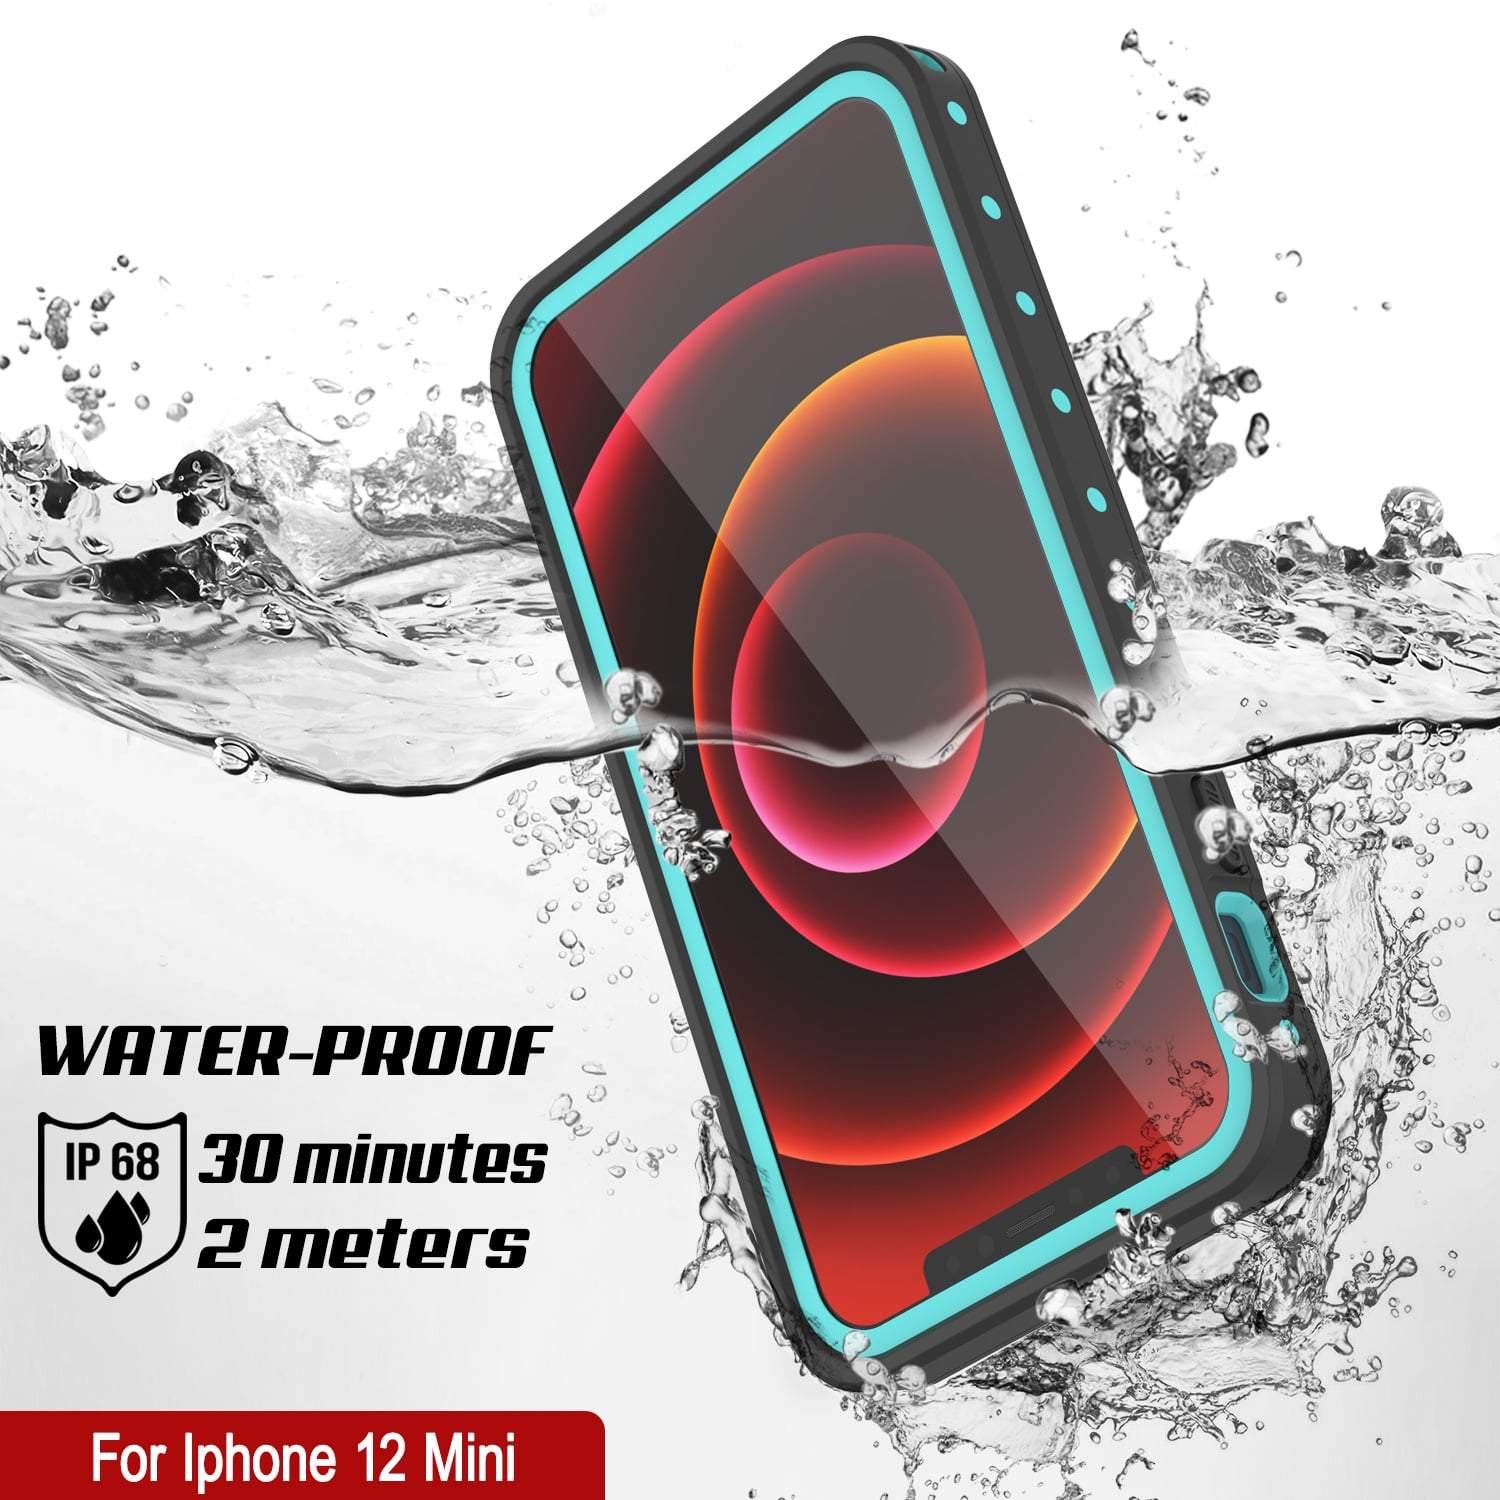 iPhone 12 Mini Waterproof IP68 Case, Punkcase [Teal] [StudStar Series] [Slim Fit]